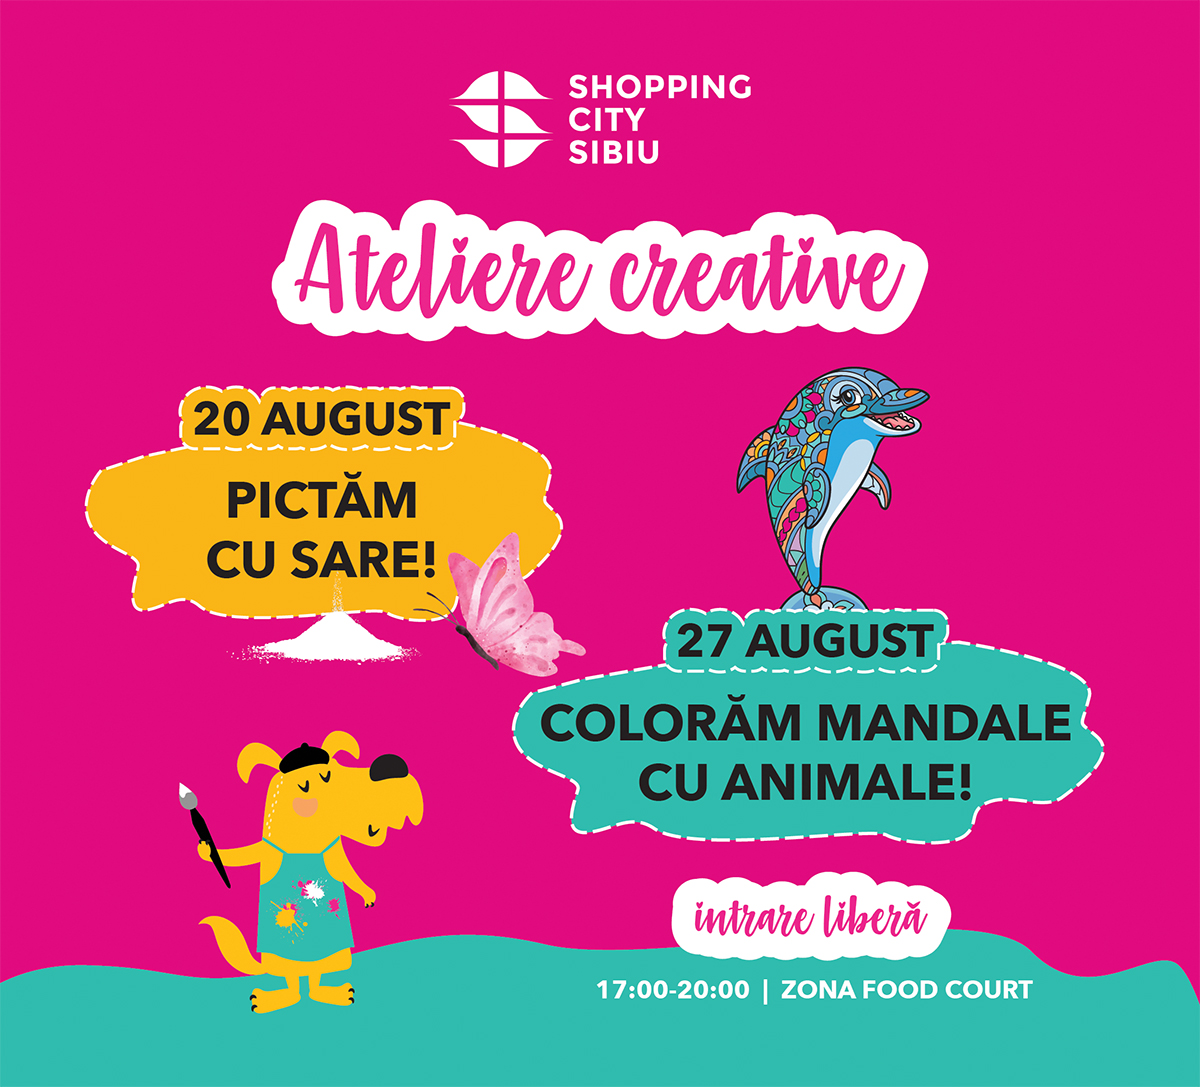 Shopping City Sibiu organizează ateliere creative pentru copii: pictură cu sare, mandale cu animale și creioane cu antene